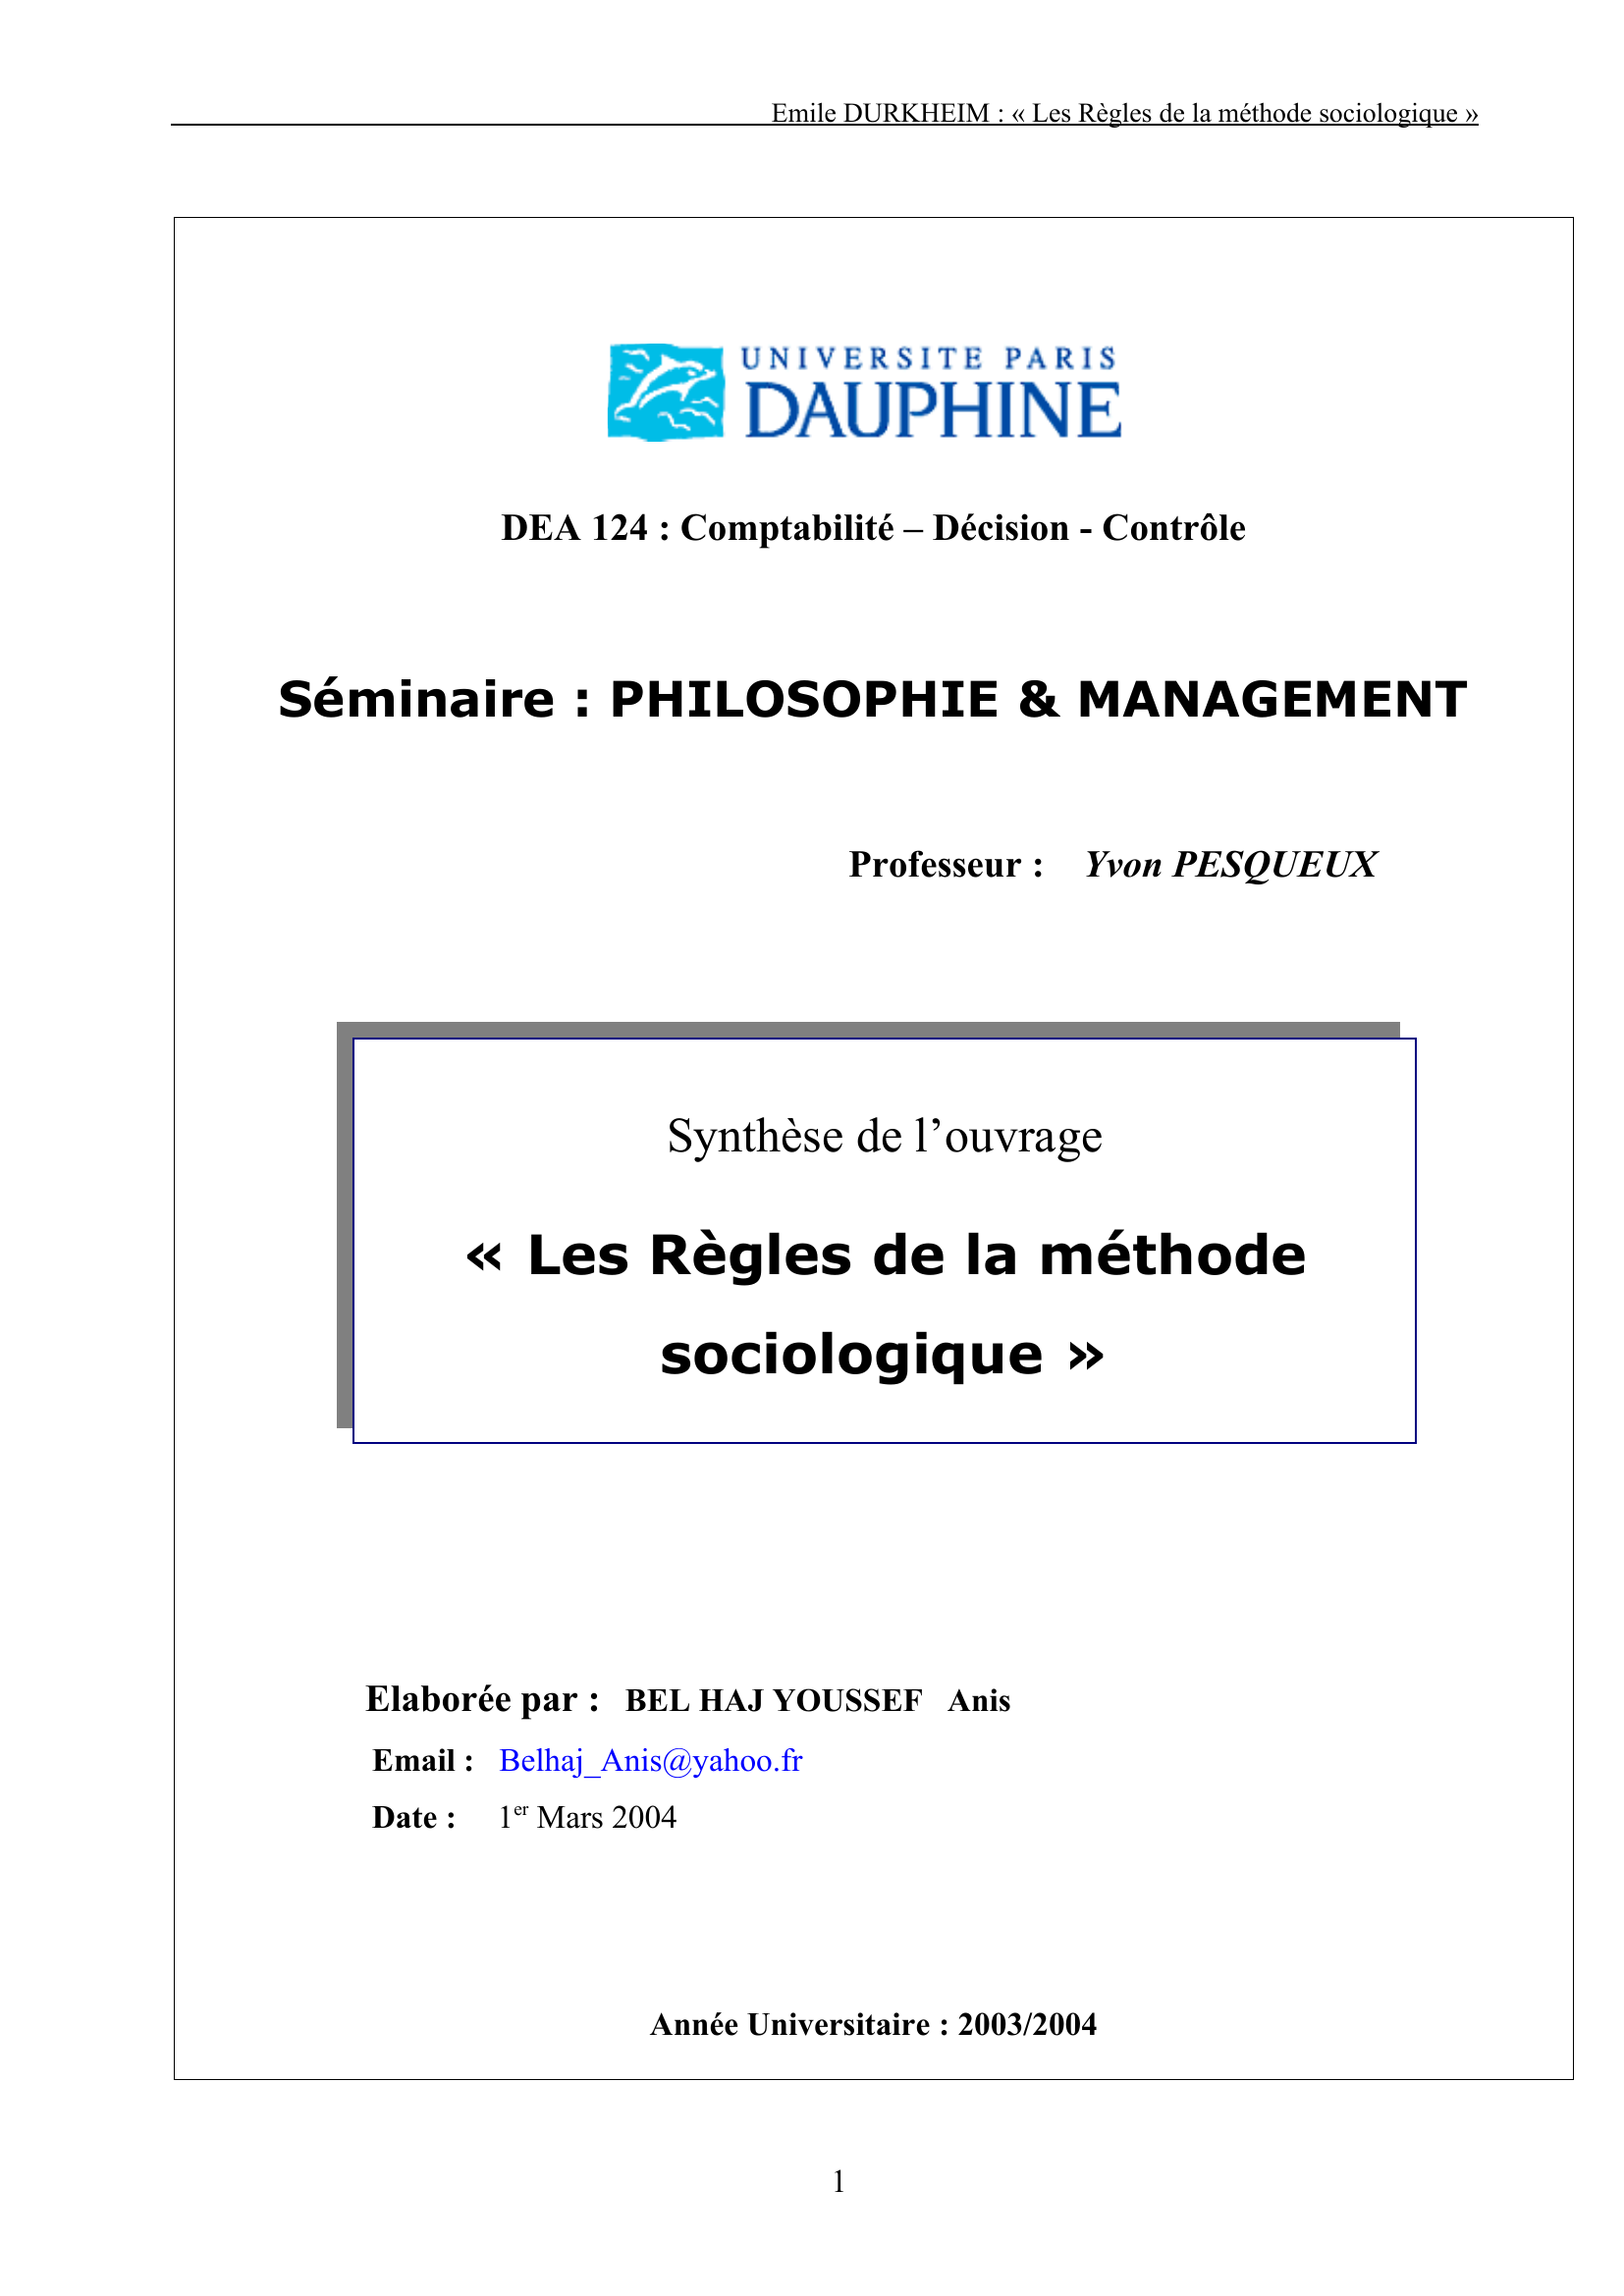 Prévisualisation du document Emile DURKHEIM : « Les Règles de la méthode sociologique »